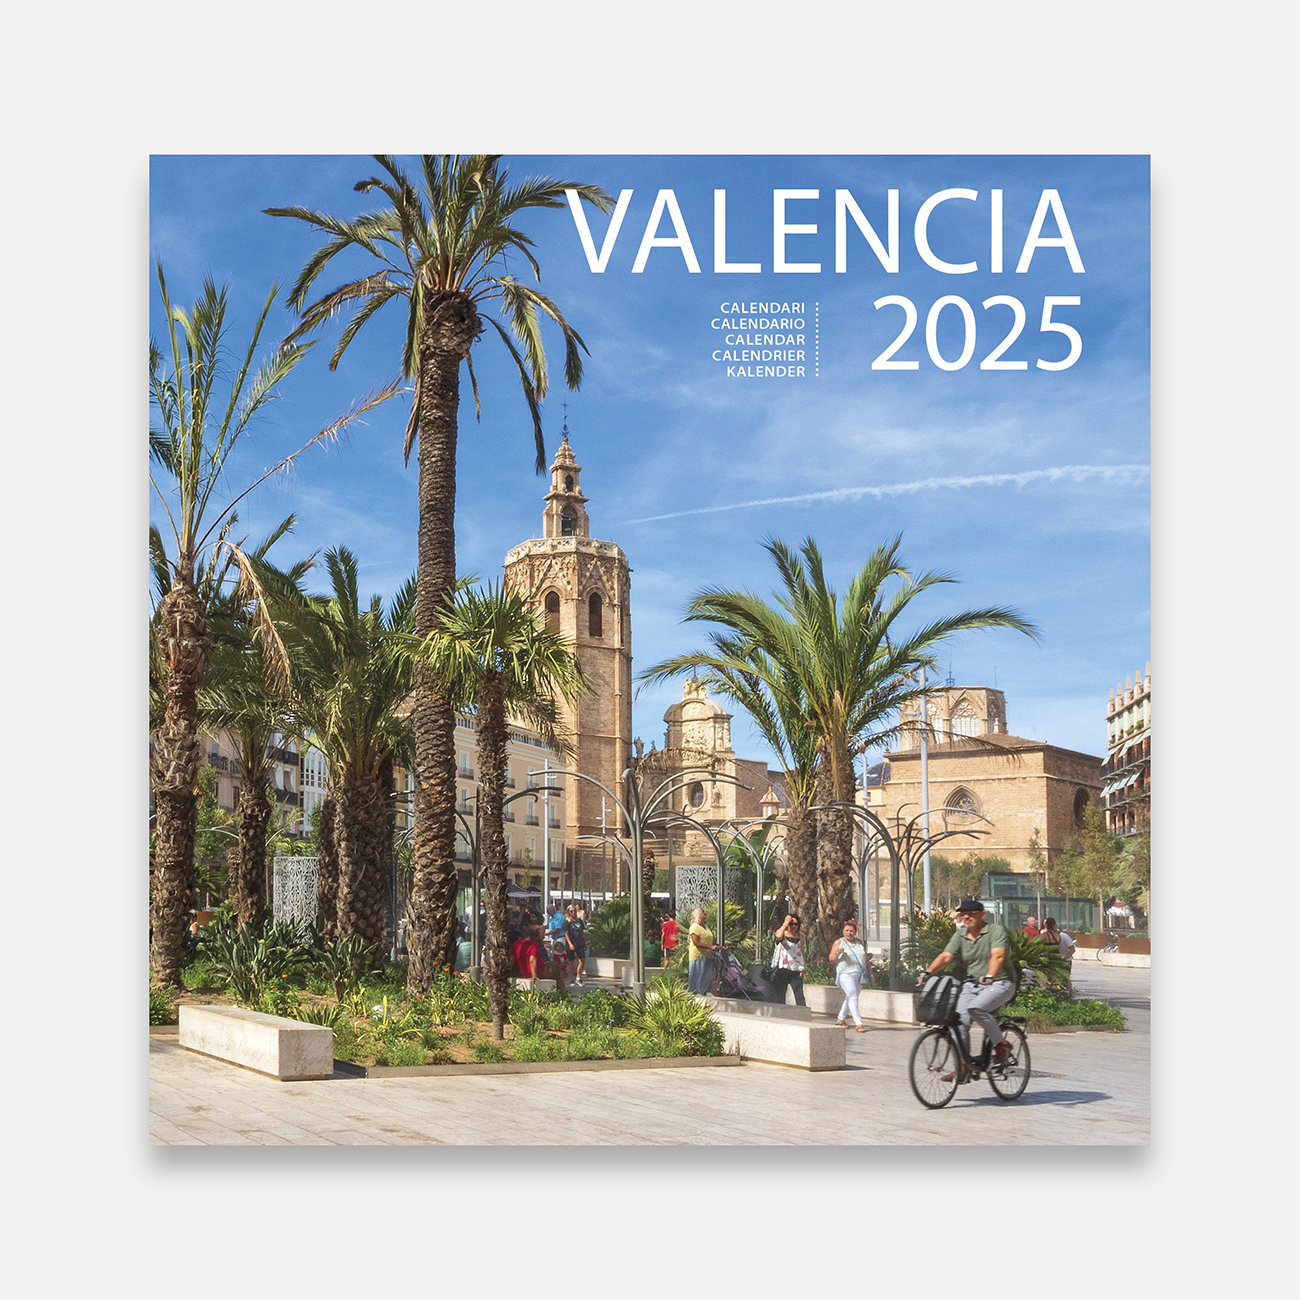 Calendar 2025 València 25val calendario pared 2025 valencia